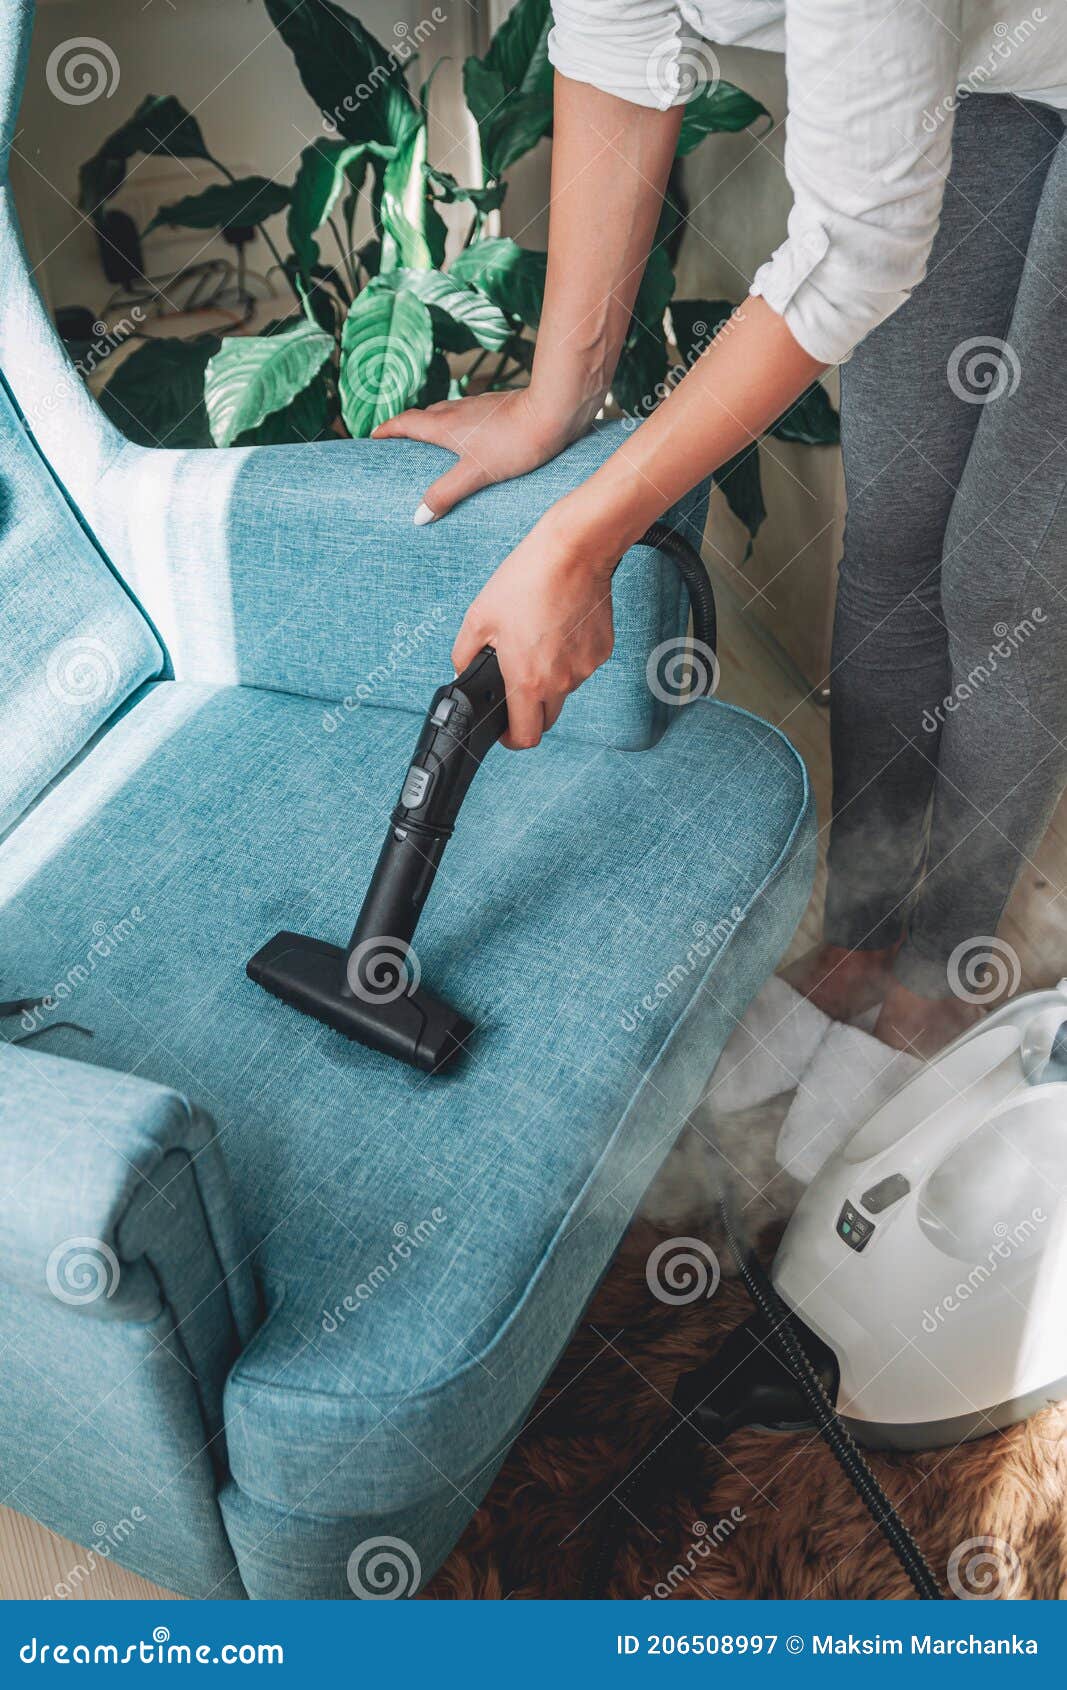 Limpieza Manual De Un Sillón Con Limpiador De Vapor Para Limpieza En Casa  Imagen de archivo - Imagen de limpieza, maneta: 206508997